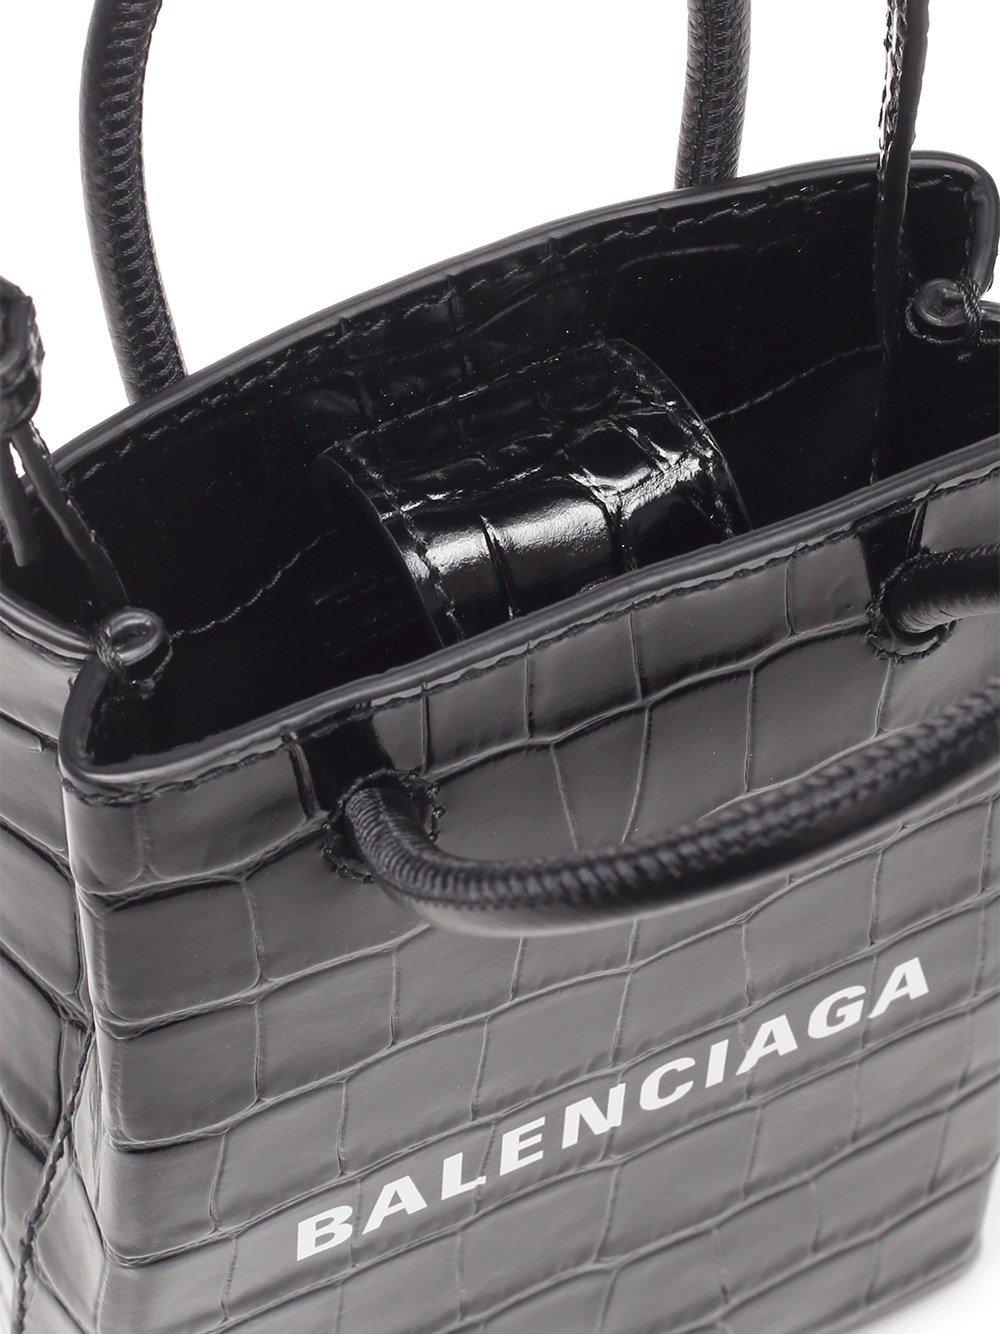 Balenciaga Leather Phone Holder Crossbody Bag in Black - Lyst